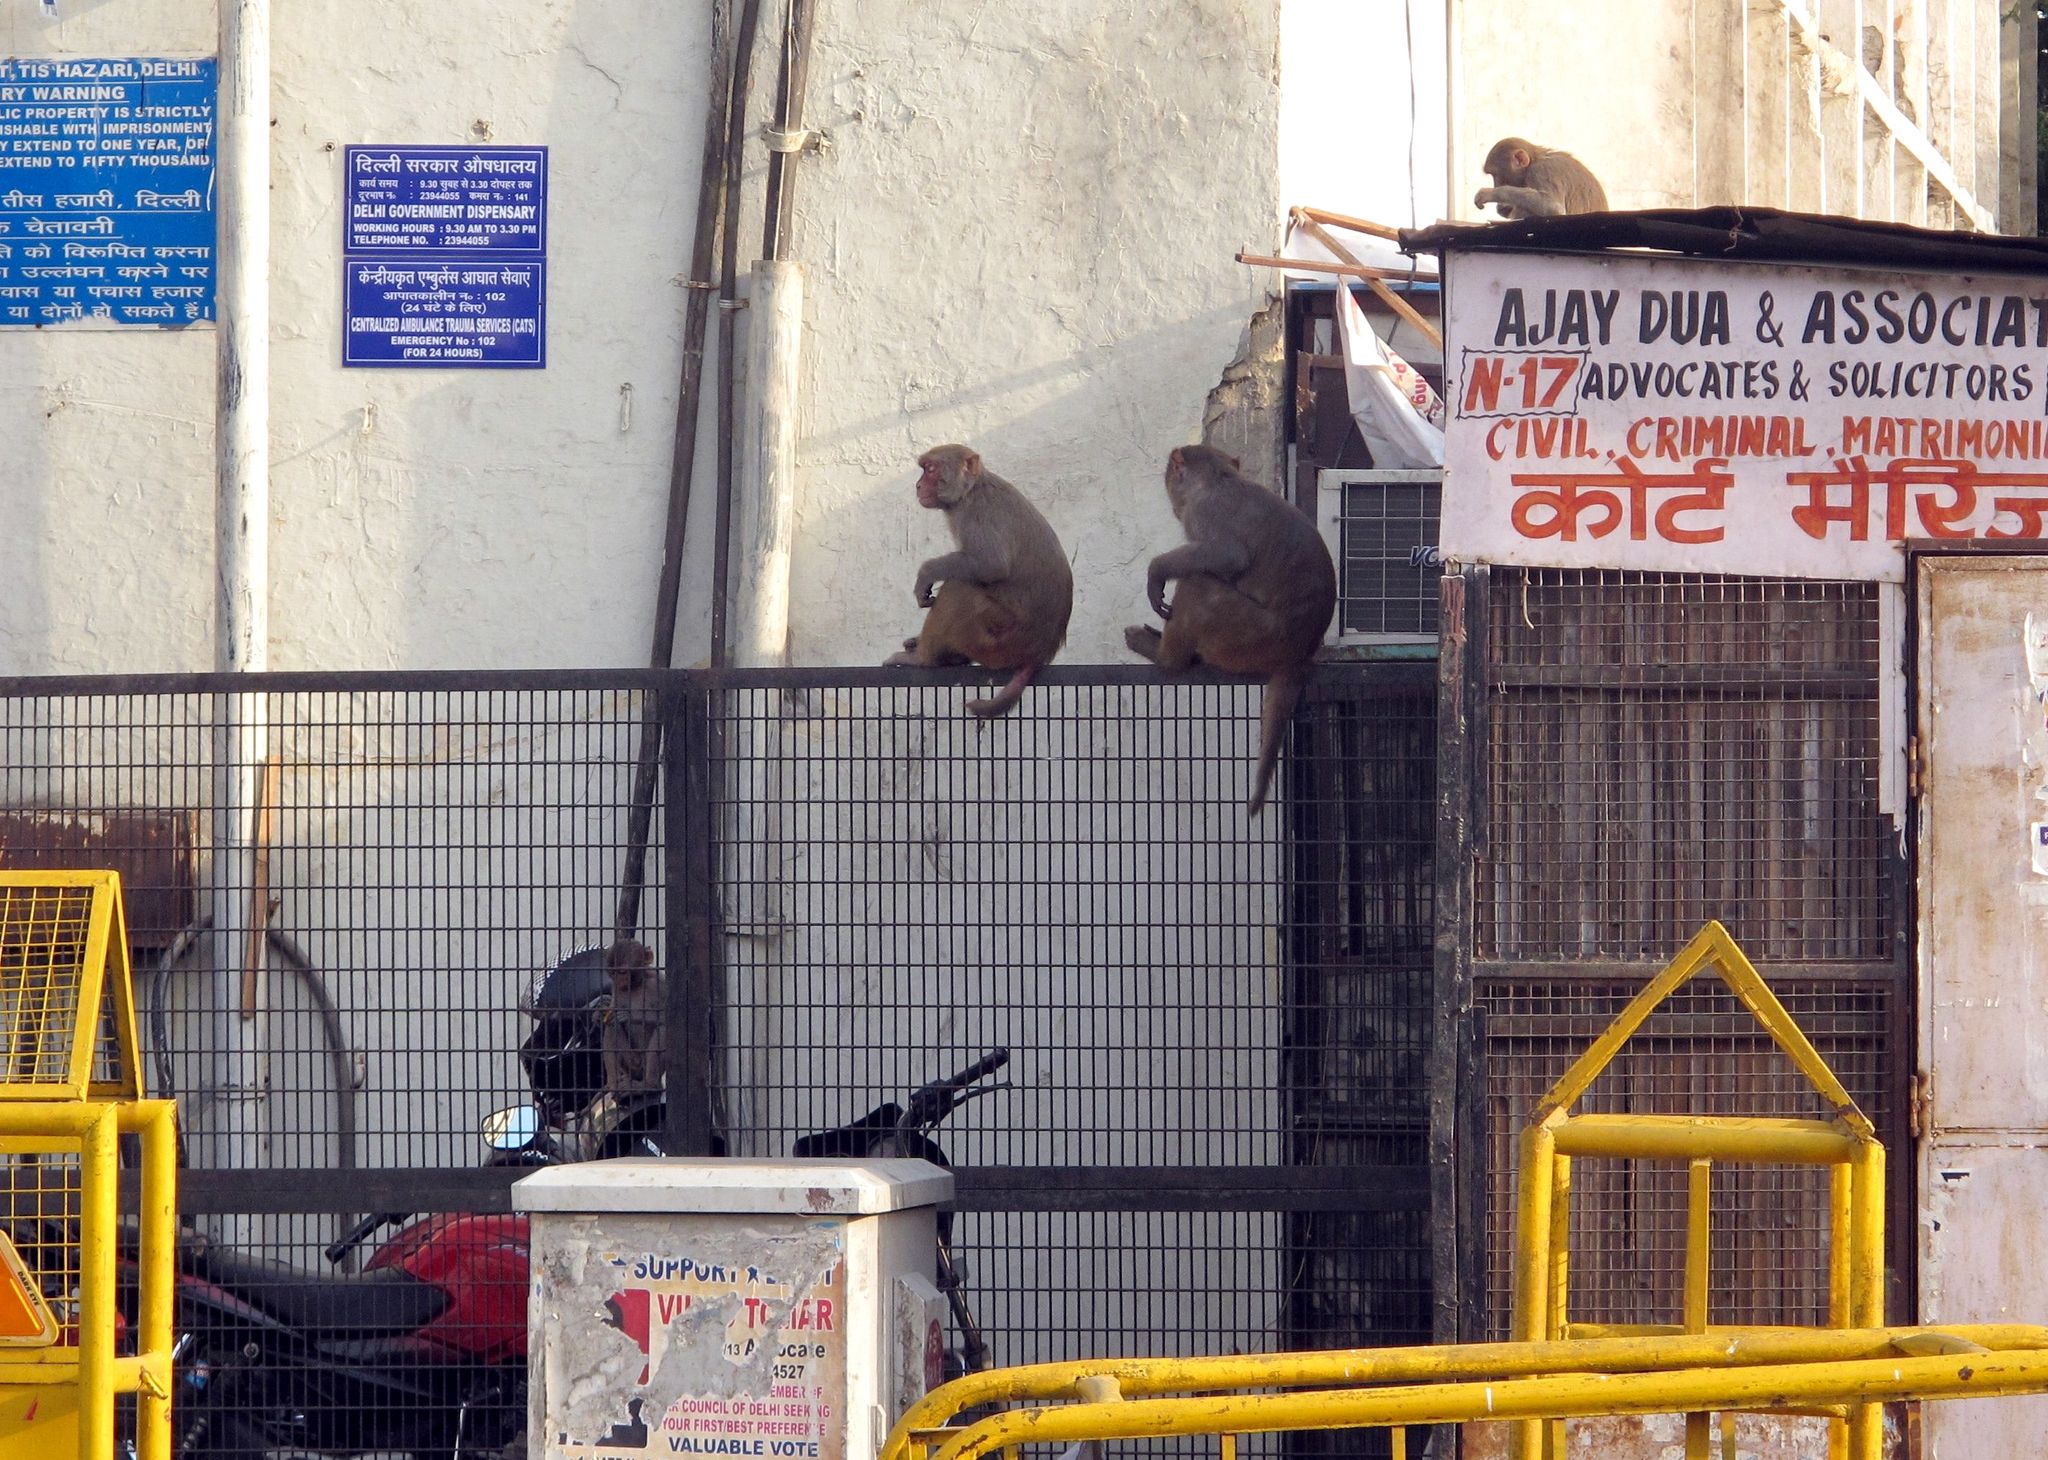 Nueva Delhi censa a sus monos para reducir conflictos con los humanos